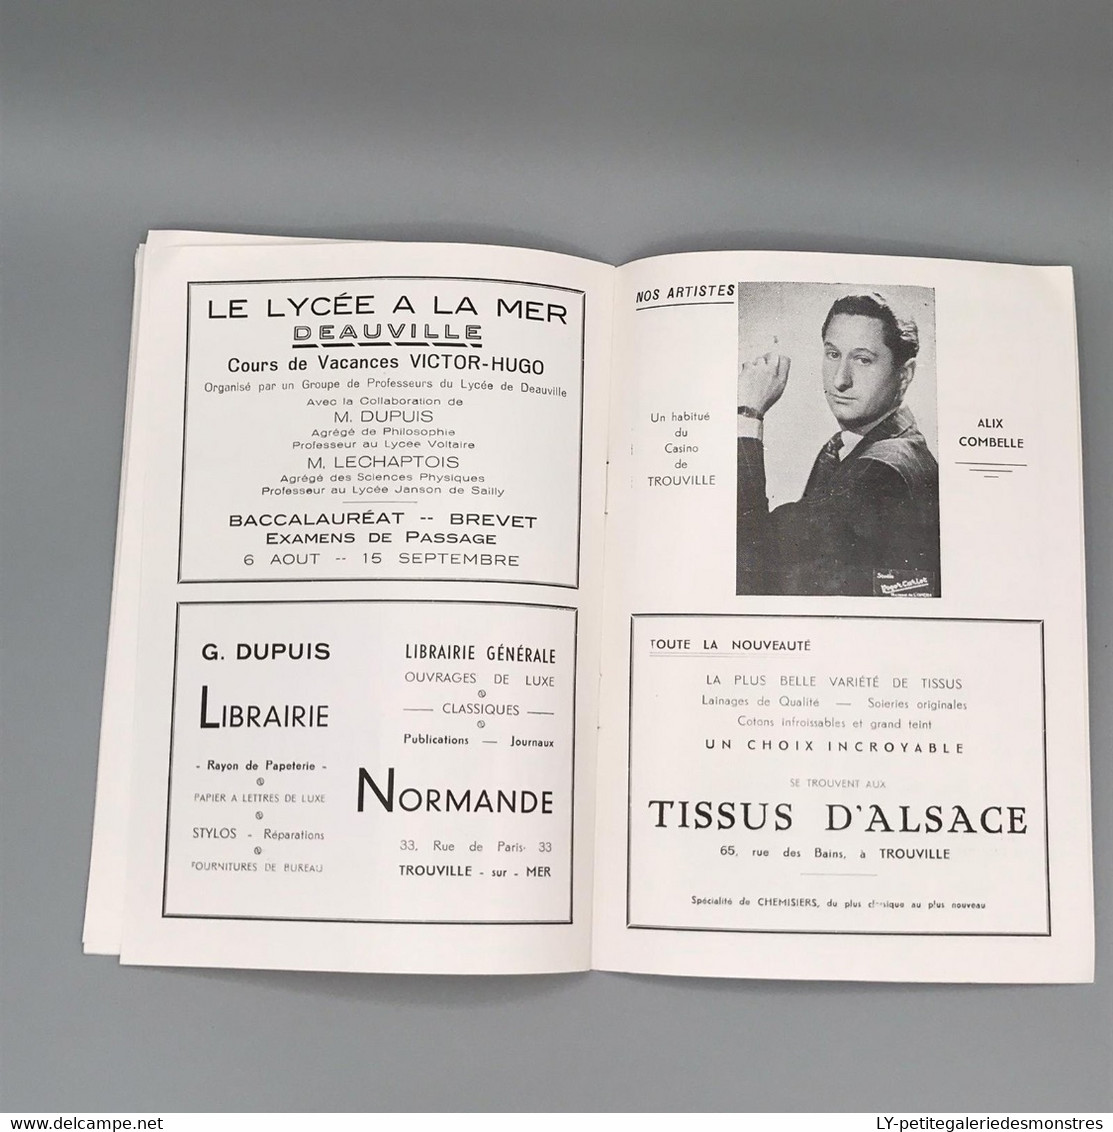 #VP94 - CASINO de Trouville - Programme de 1951- Mozart de Sacha GUITRY - Comédie en 3 actes